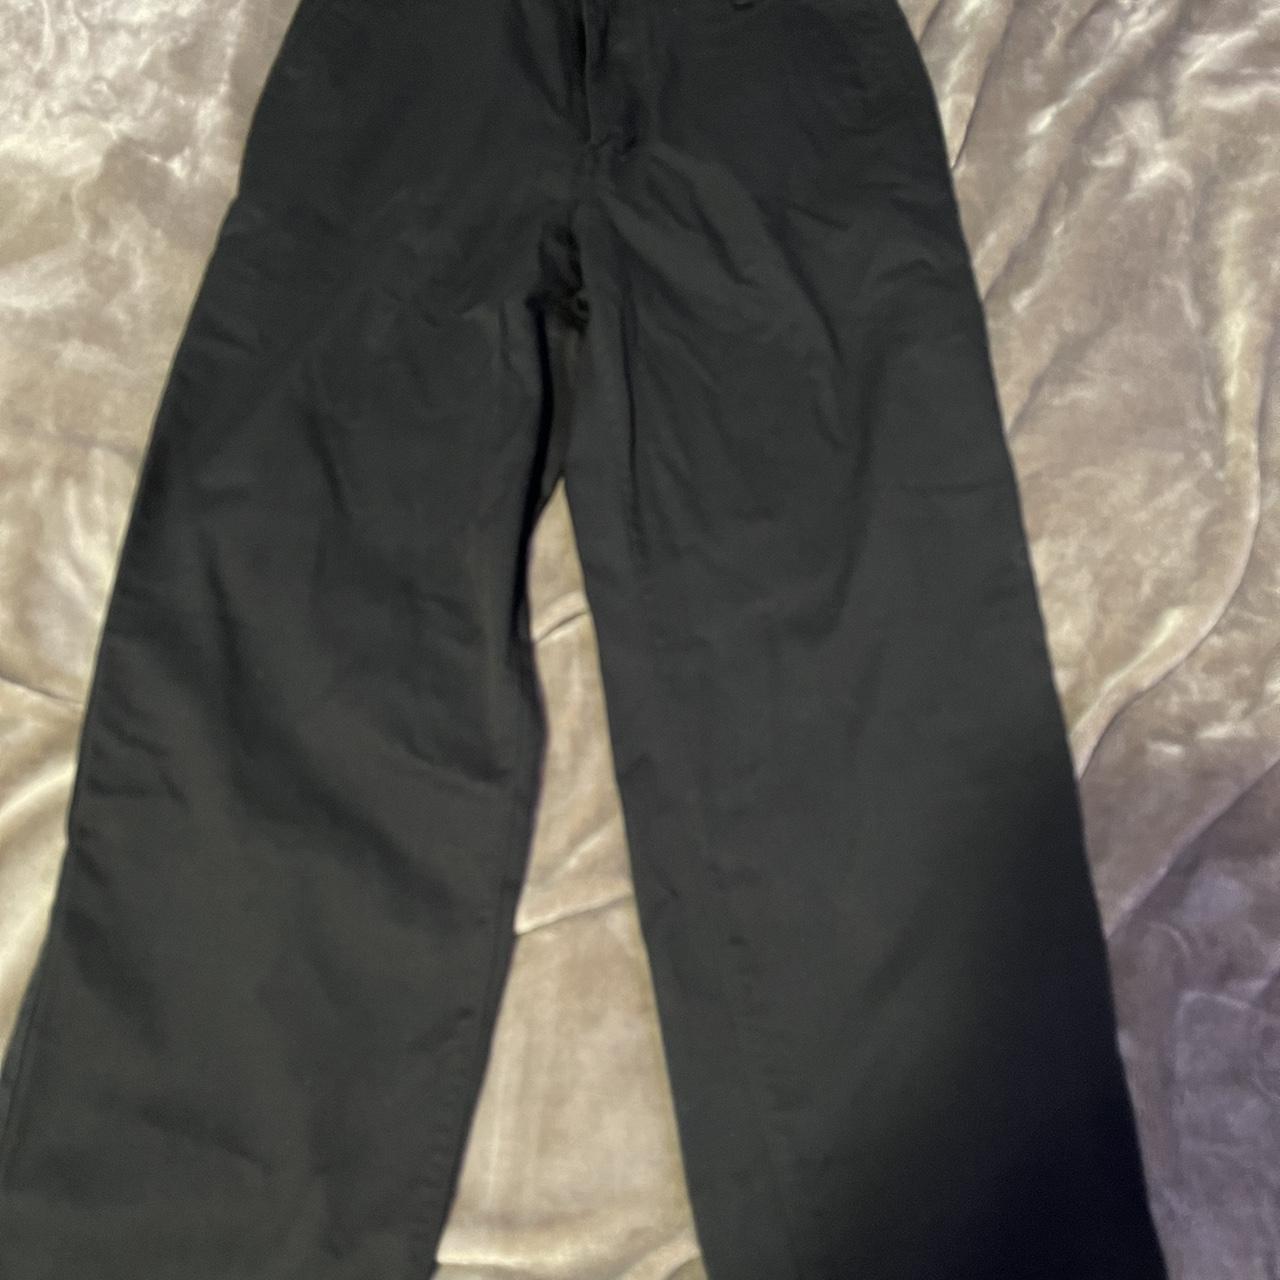 empyre plain black pants baggy fit, perfect - Depop